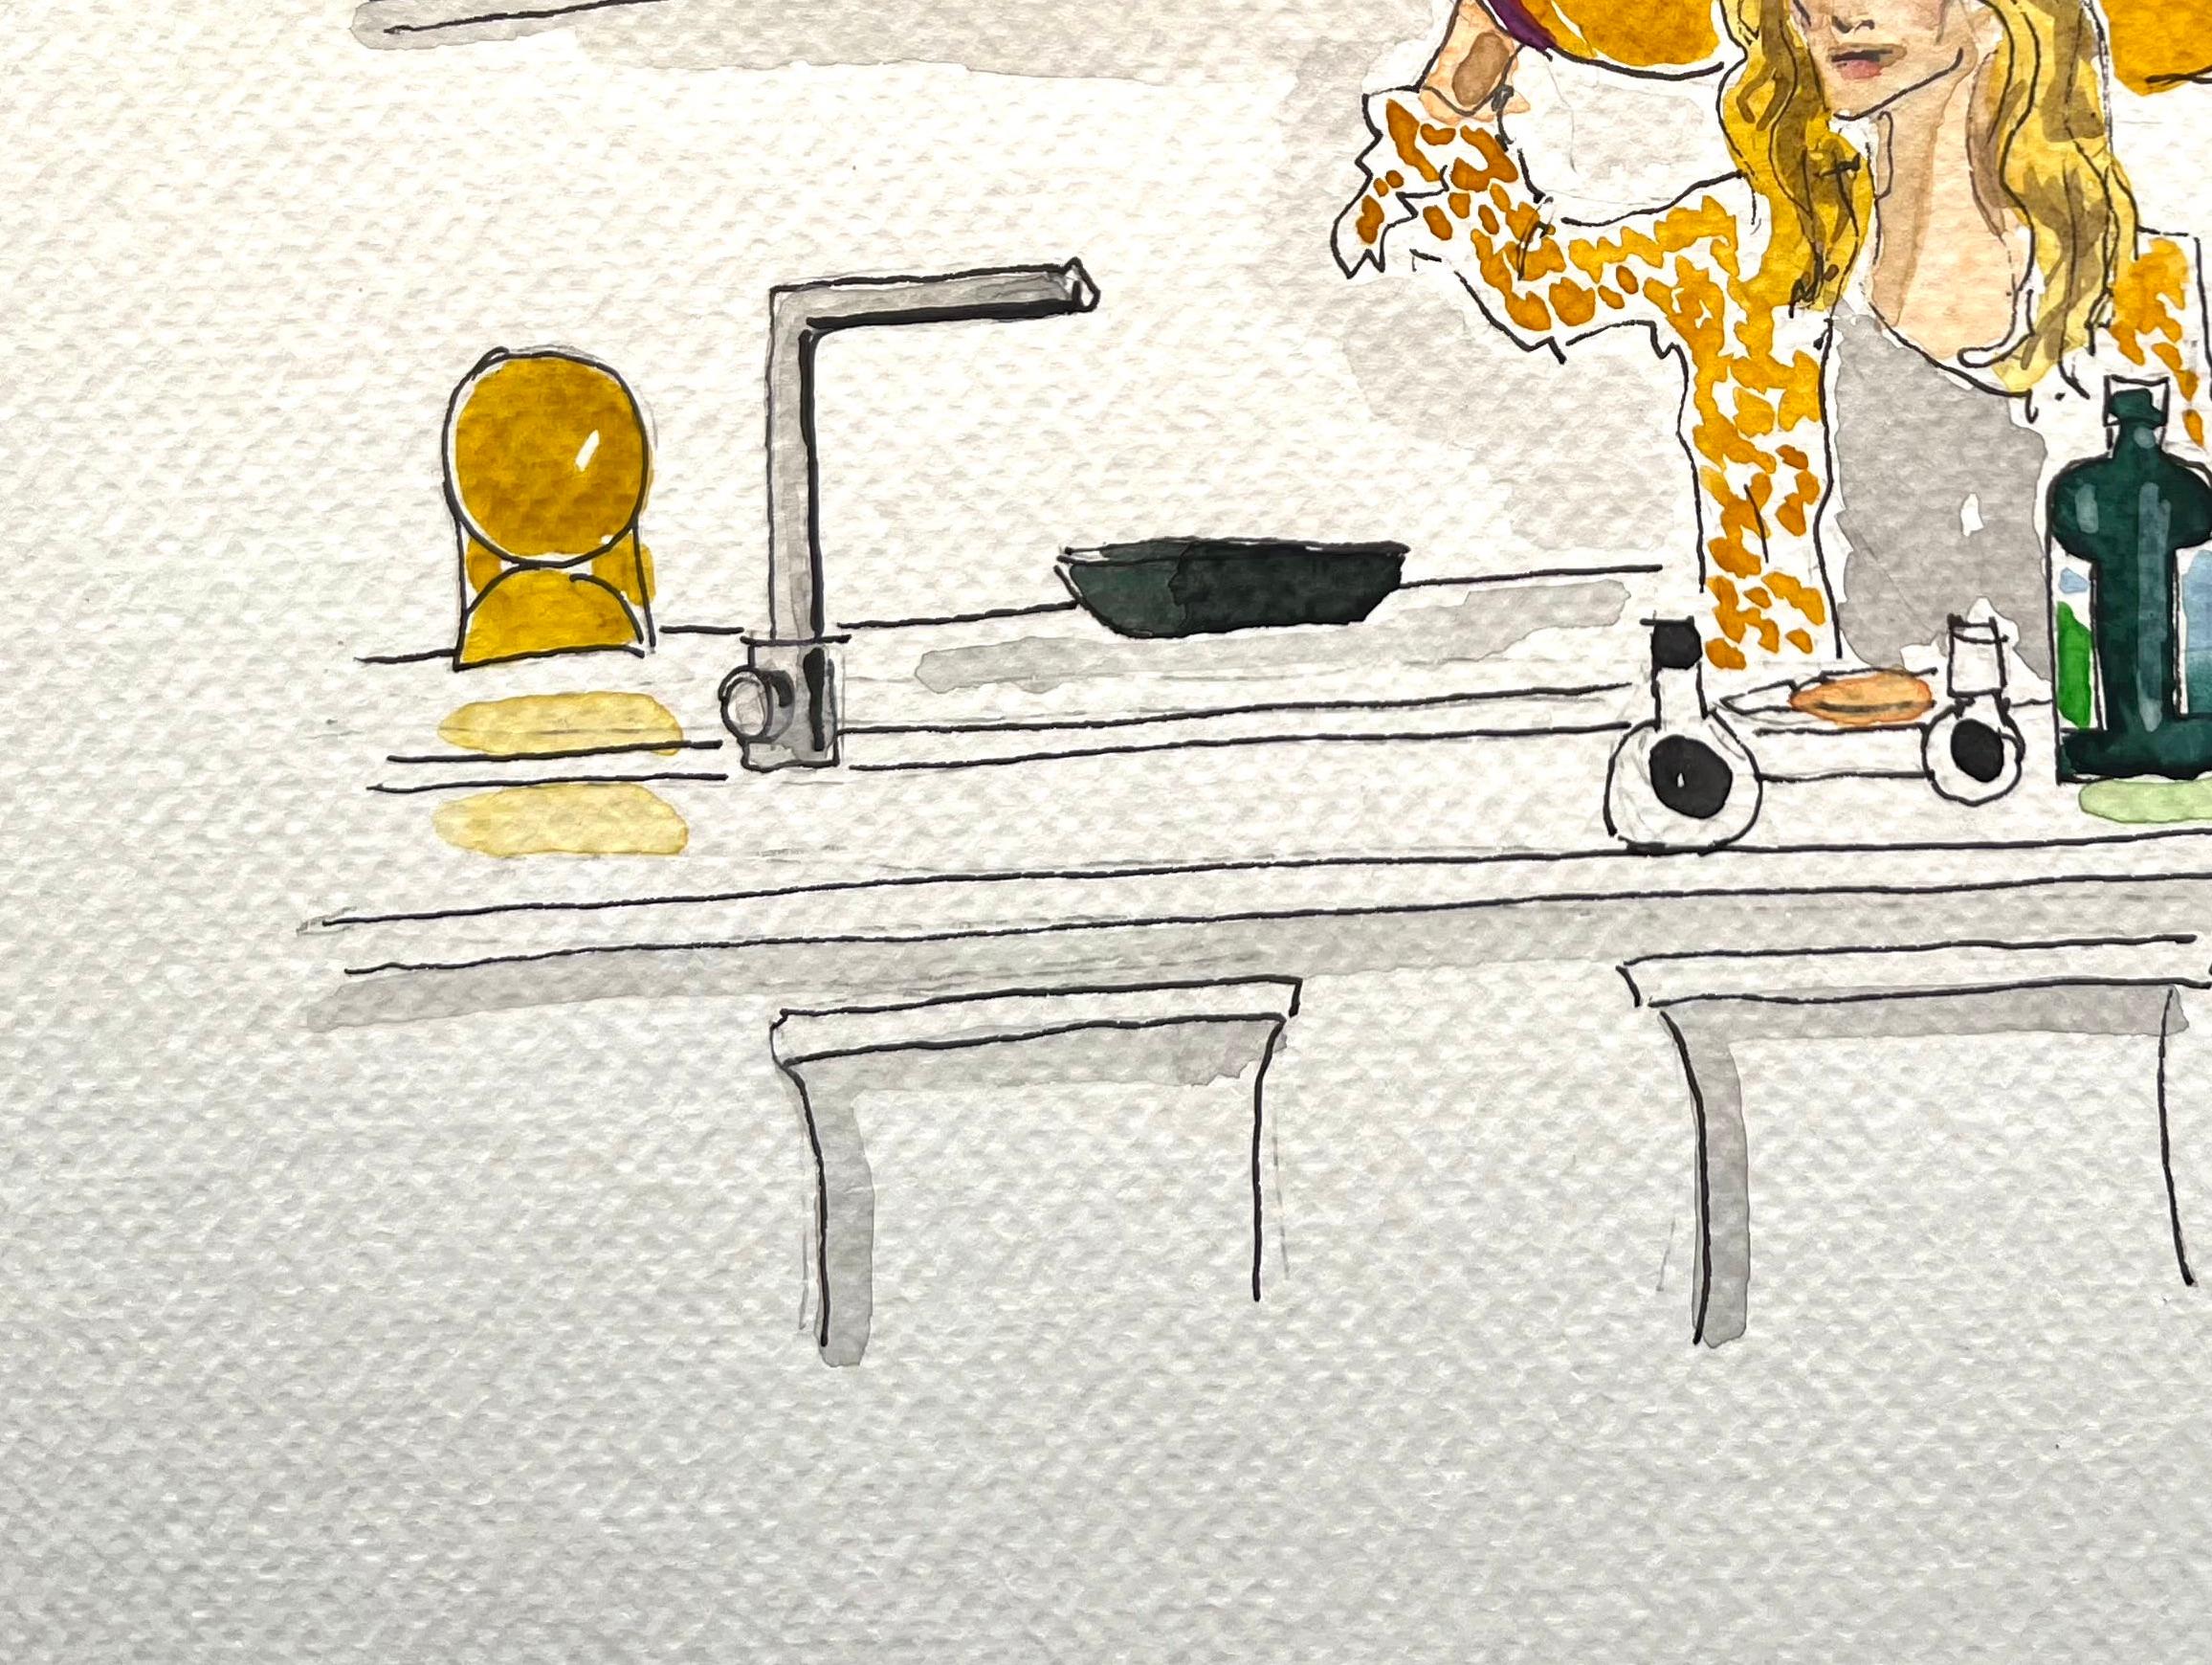 Sex in the city, Carrie Bradshaw in der Küche mit Hut, Aquarell auf Papier  – Art von Manuel Santelices